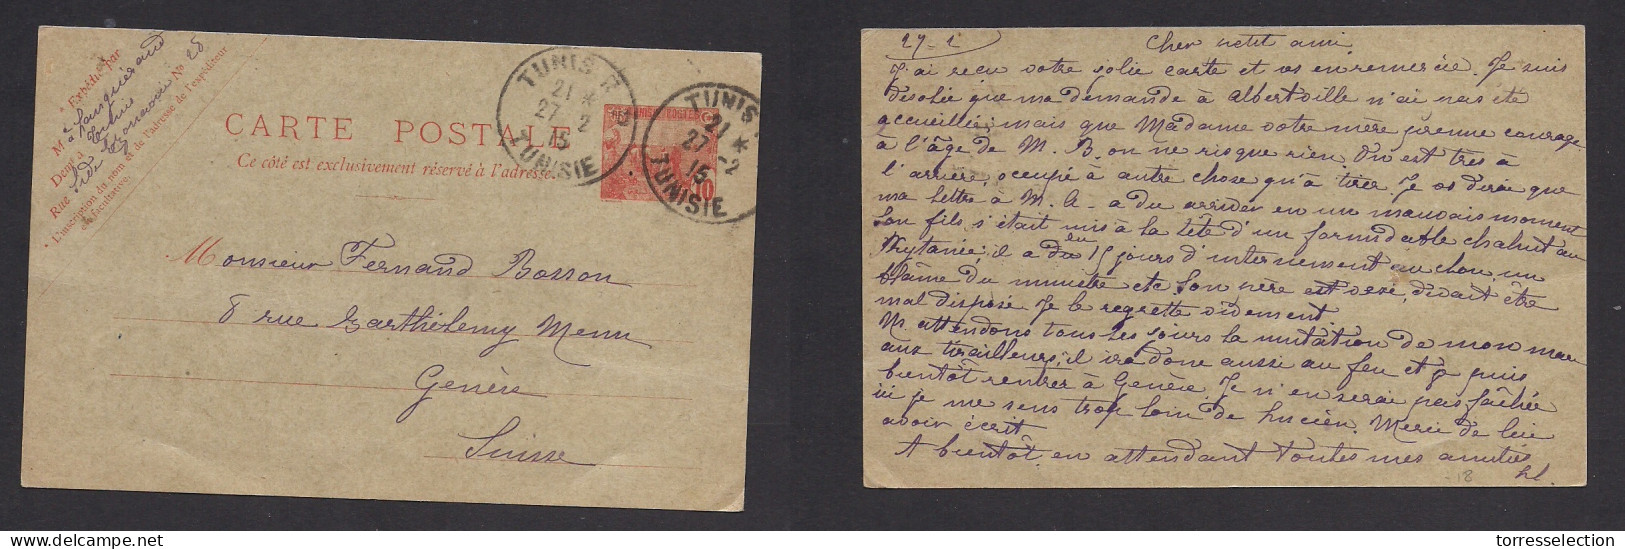 TUNISIA. 1915 (27 Febr) Tunis RP - Switzerland, Geneve. 10c Red Stat Card. VF Used. XSALE. - Tunisia (1956-...)